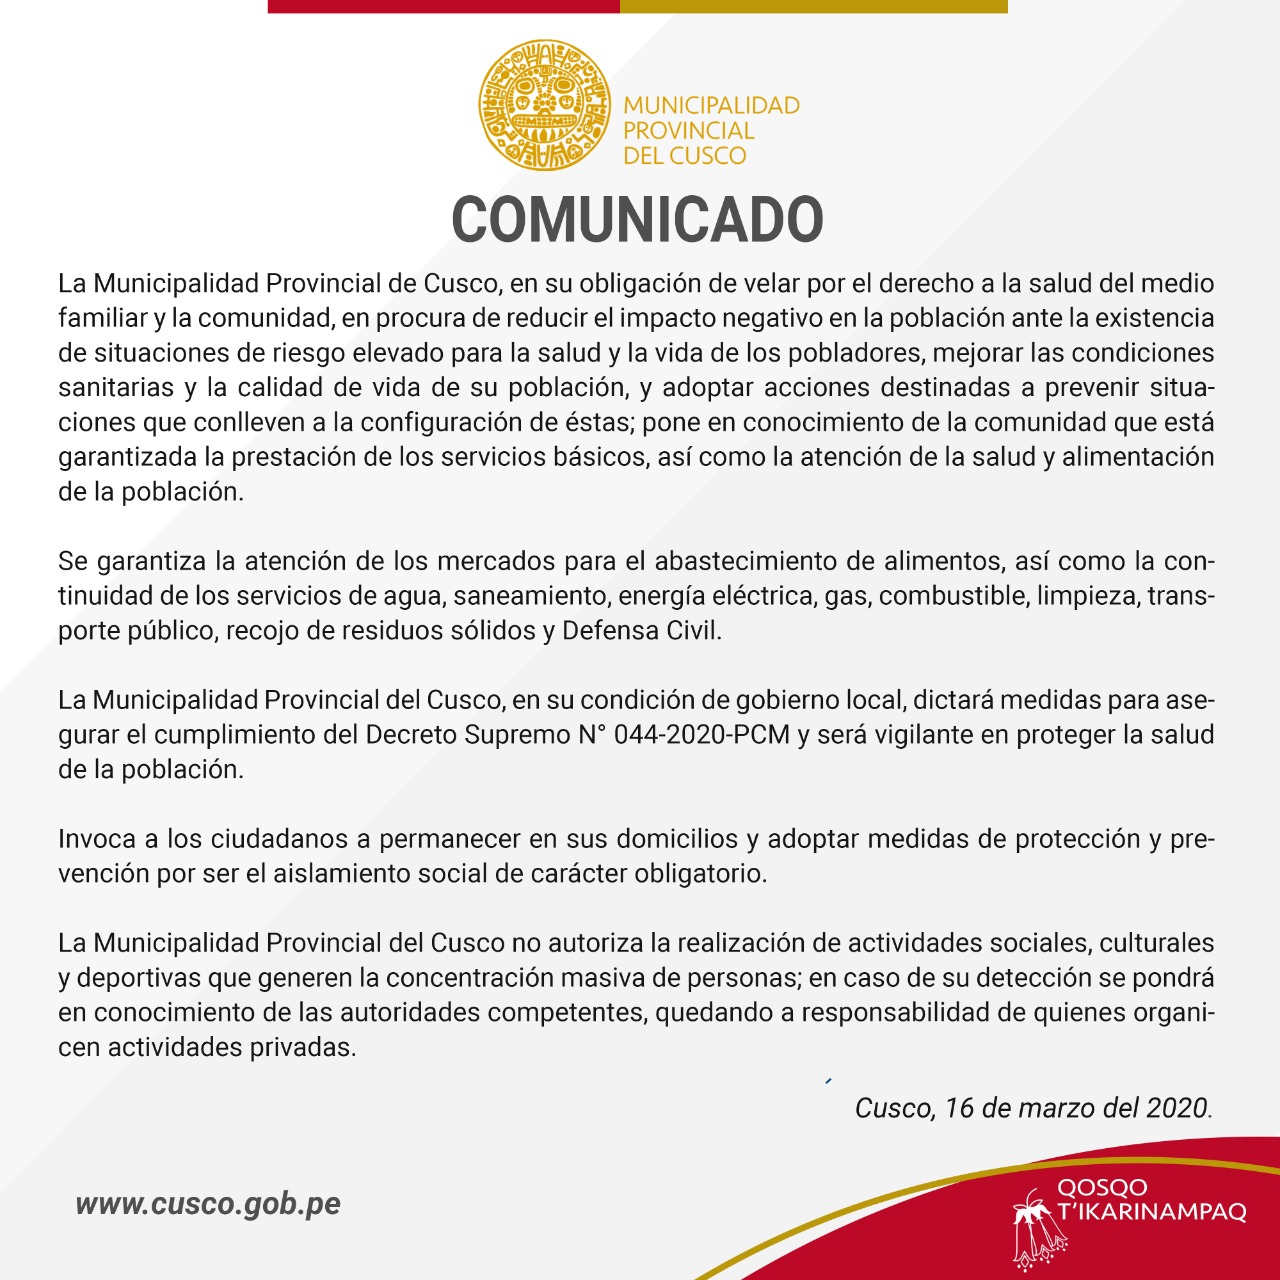 Comunicado – La Municipalidad Provincial del Cusco, en su obligación de velar por el derecho a la salud del medio familiar y la comunidad…